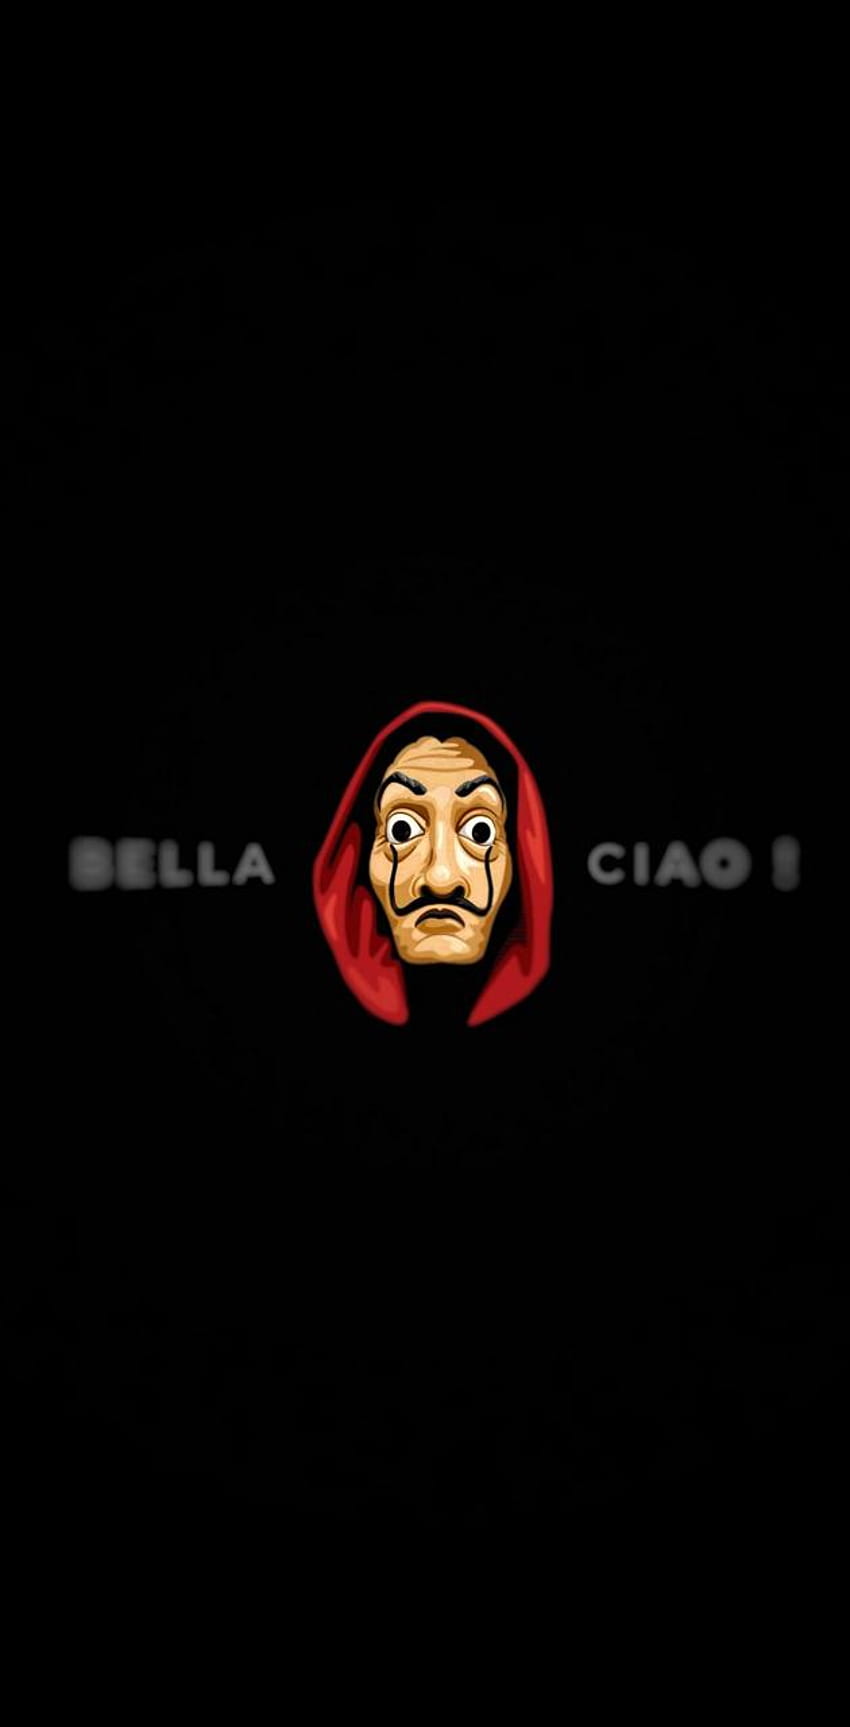 Bella Ciao , Geldraub Bella Ciao HD-Handy-Hintergrundbild